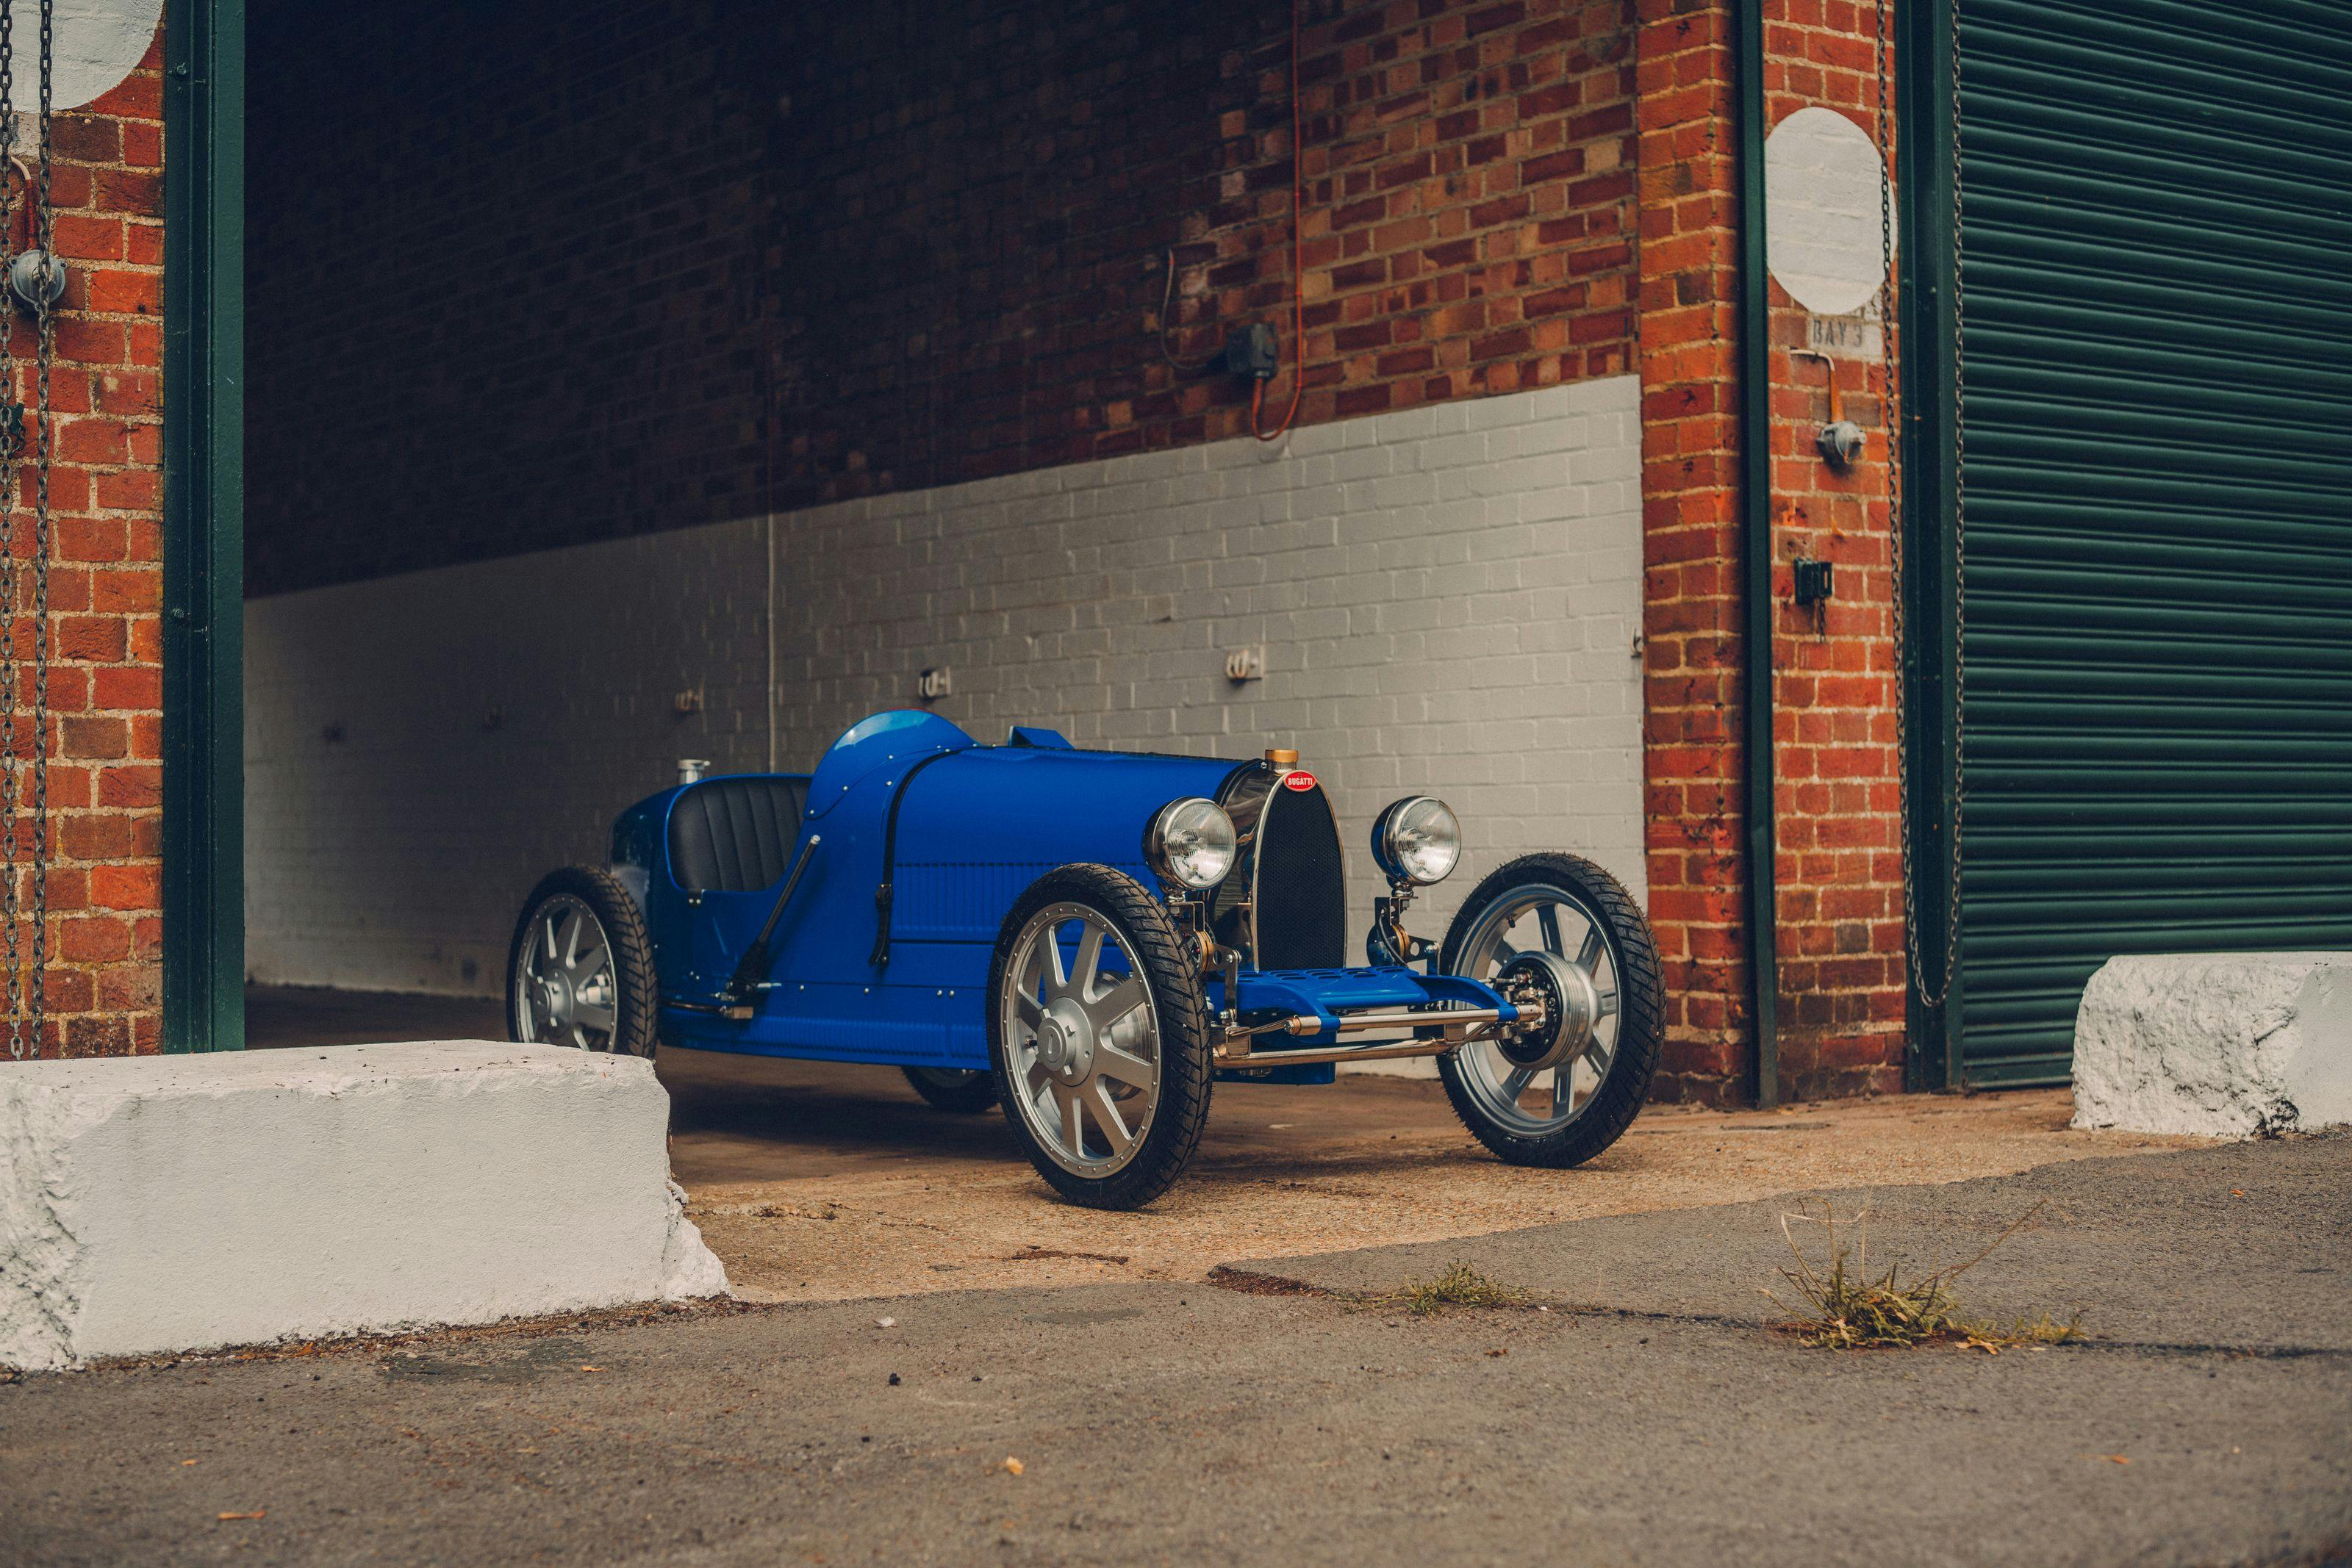 Renaissance de la Bugatti Baby : Bugatti dévoile les spécifications finales alors que la production démarre